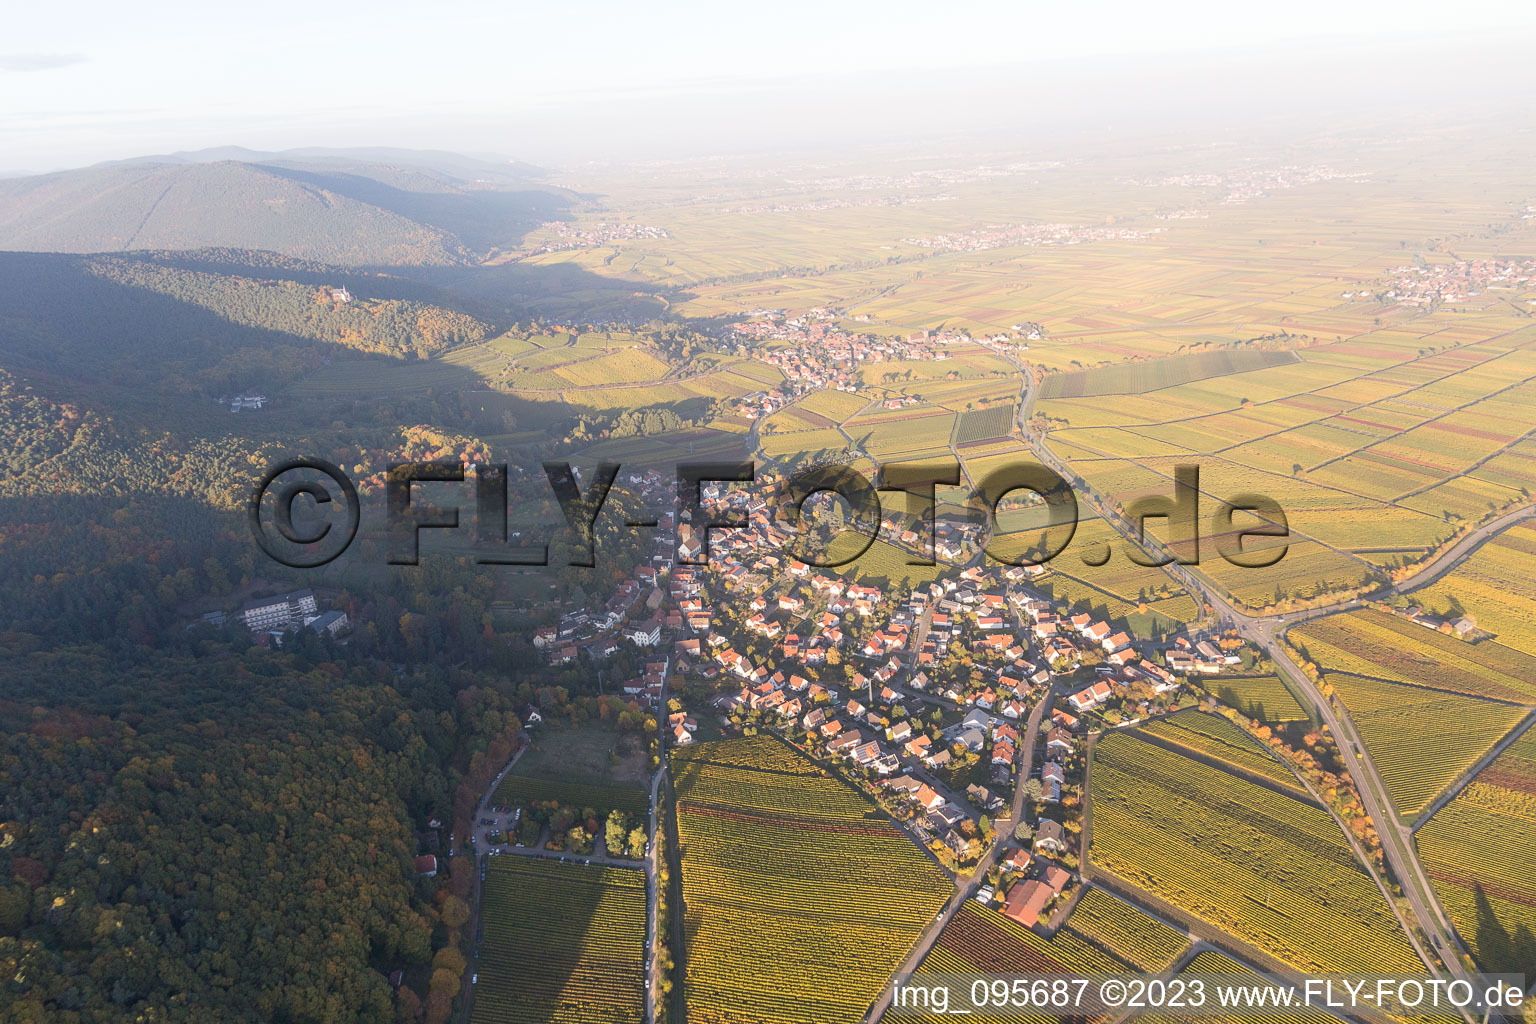 Gleisweiler dans le département Rhénanie-Palatinat, Allemagne vue du ciel